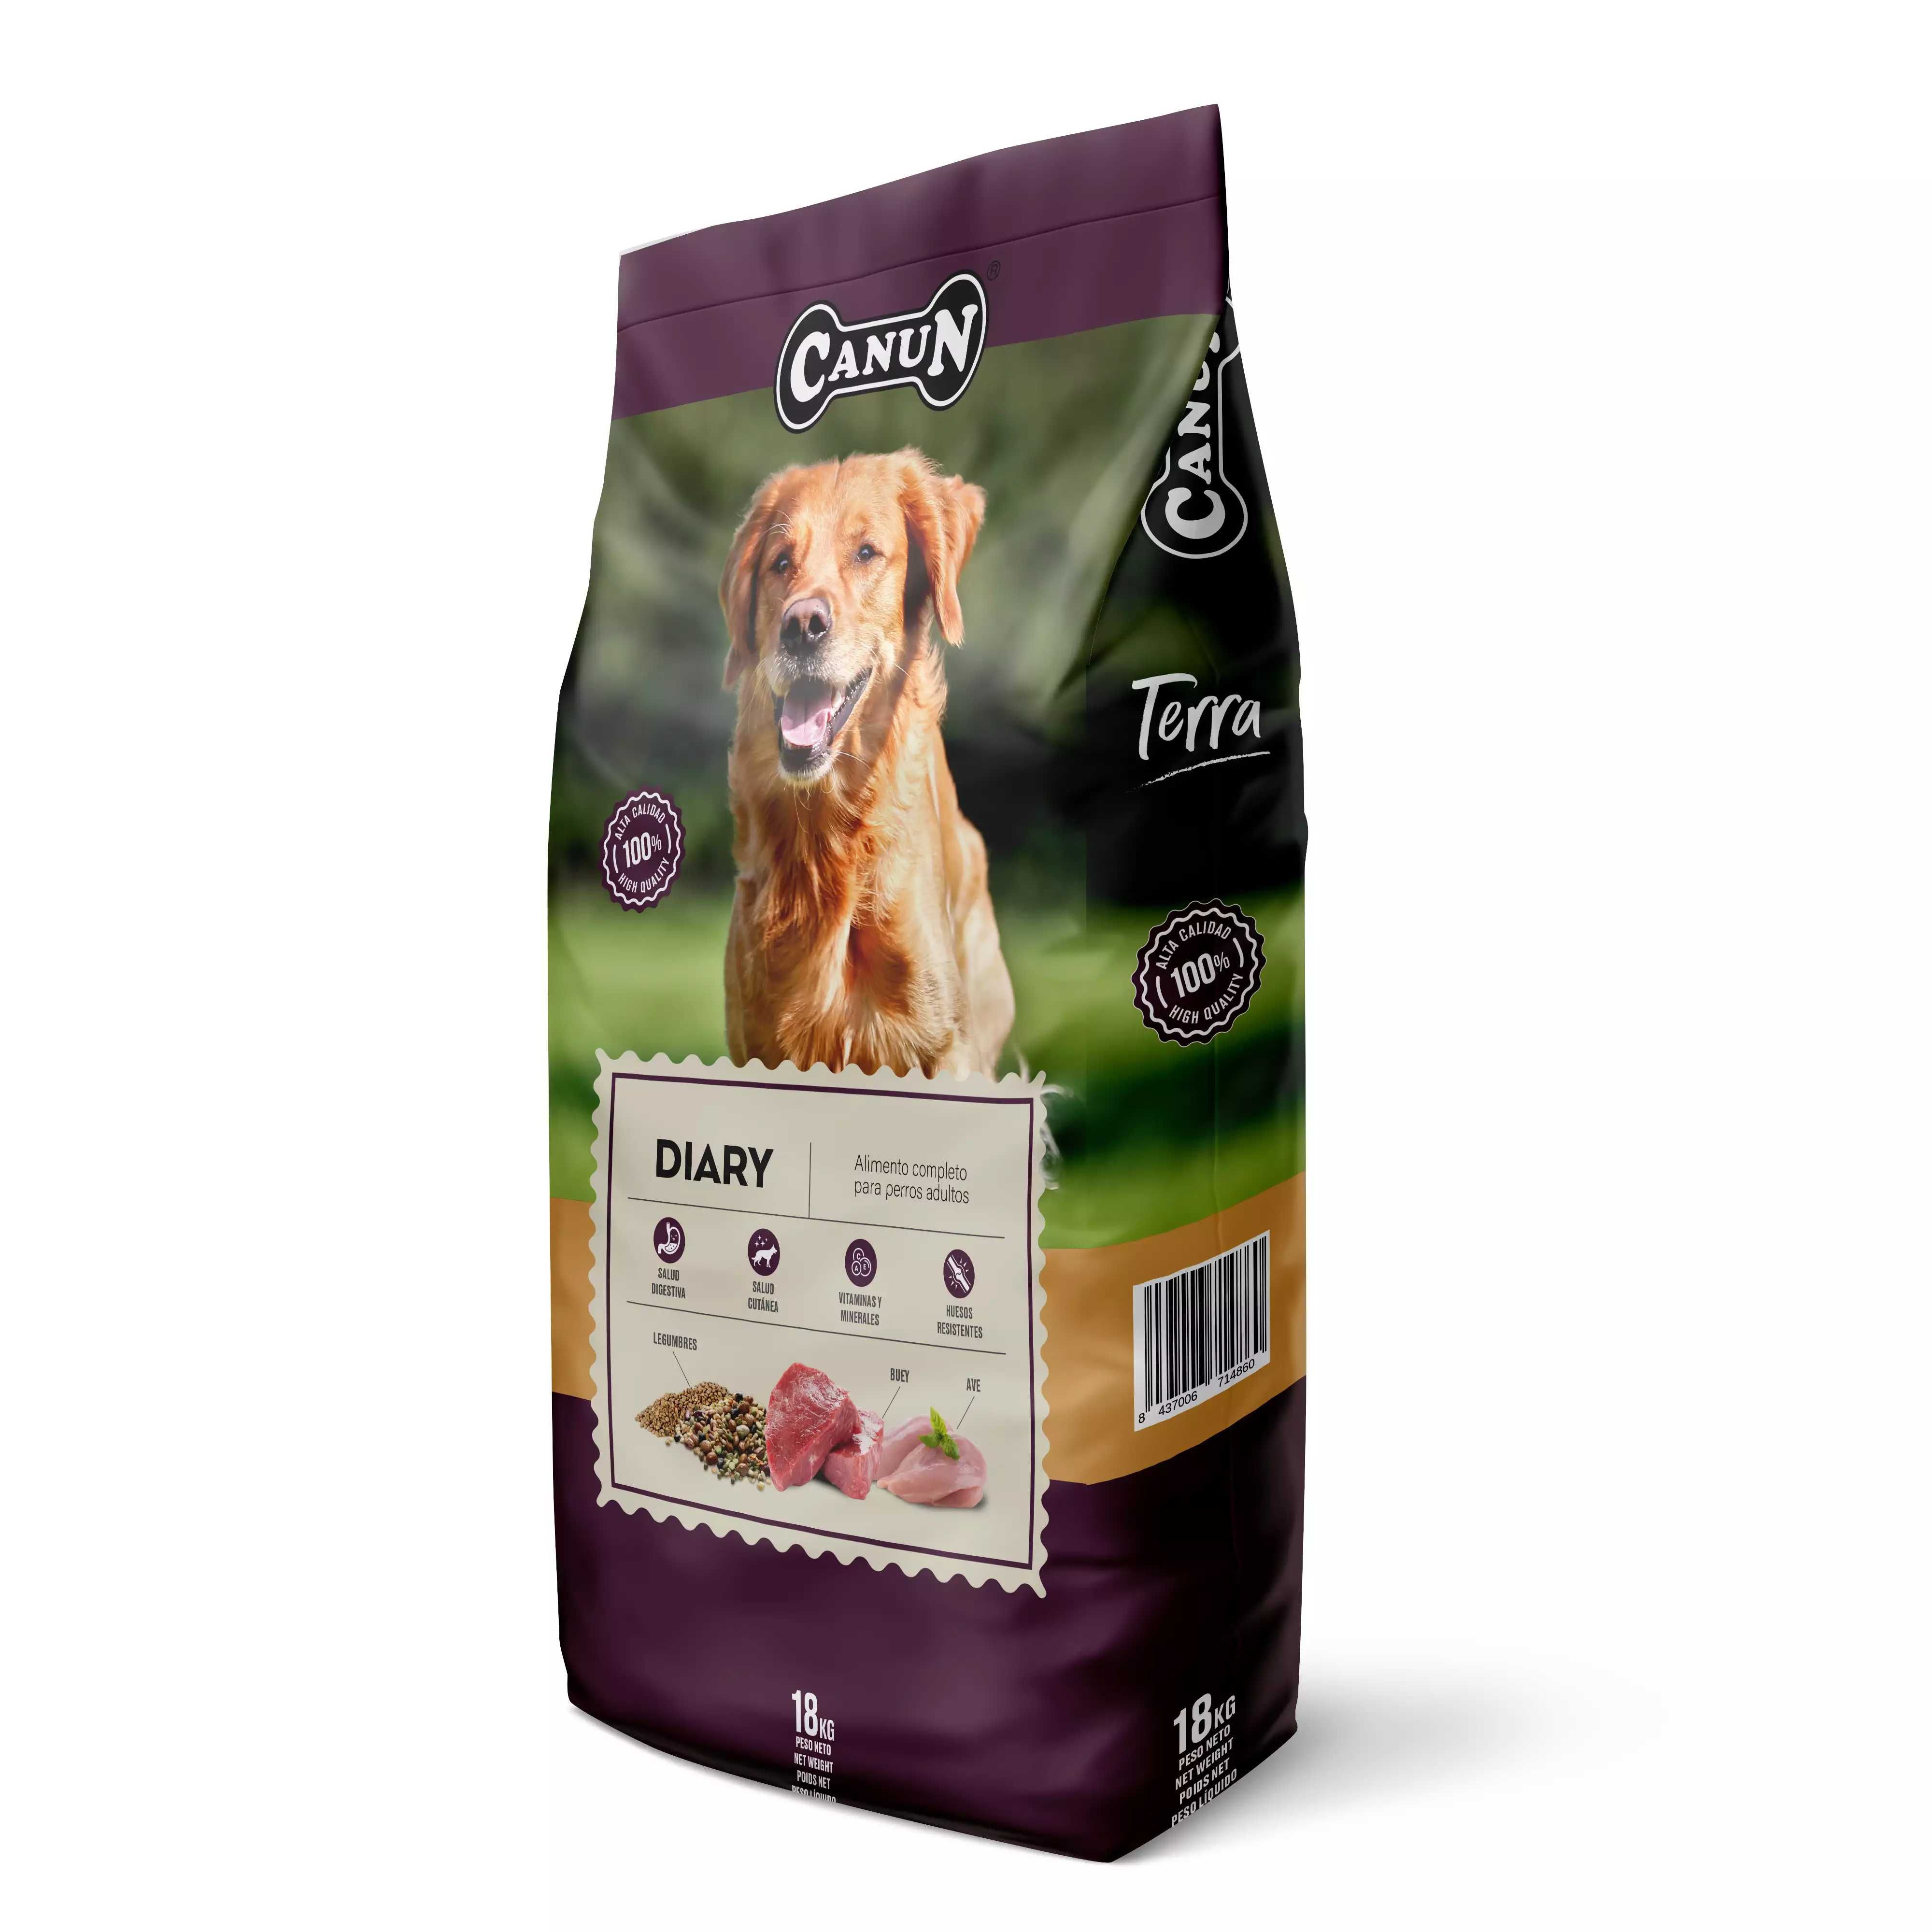 Canun Terra Diary 18 kg karma dla psów dojrzałych i z nadwagą,wołowina